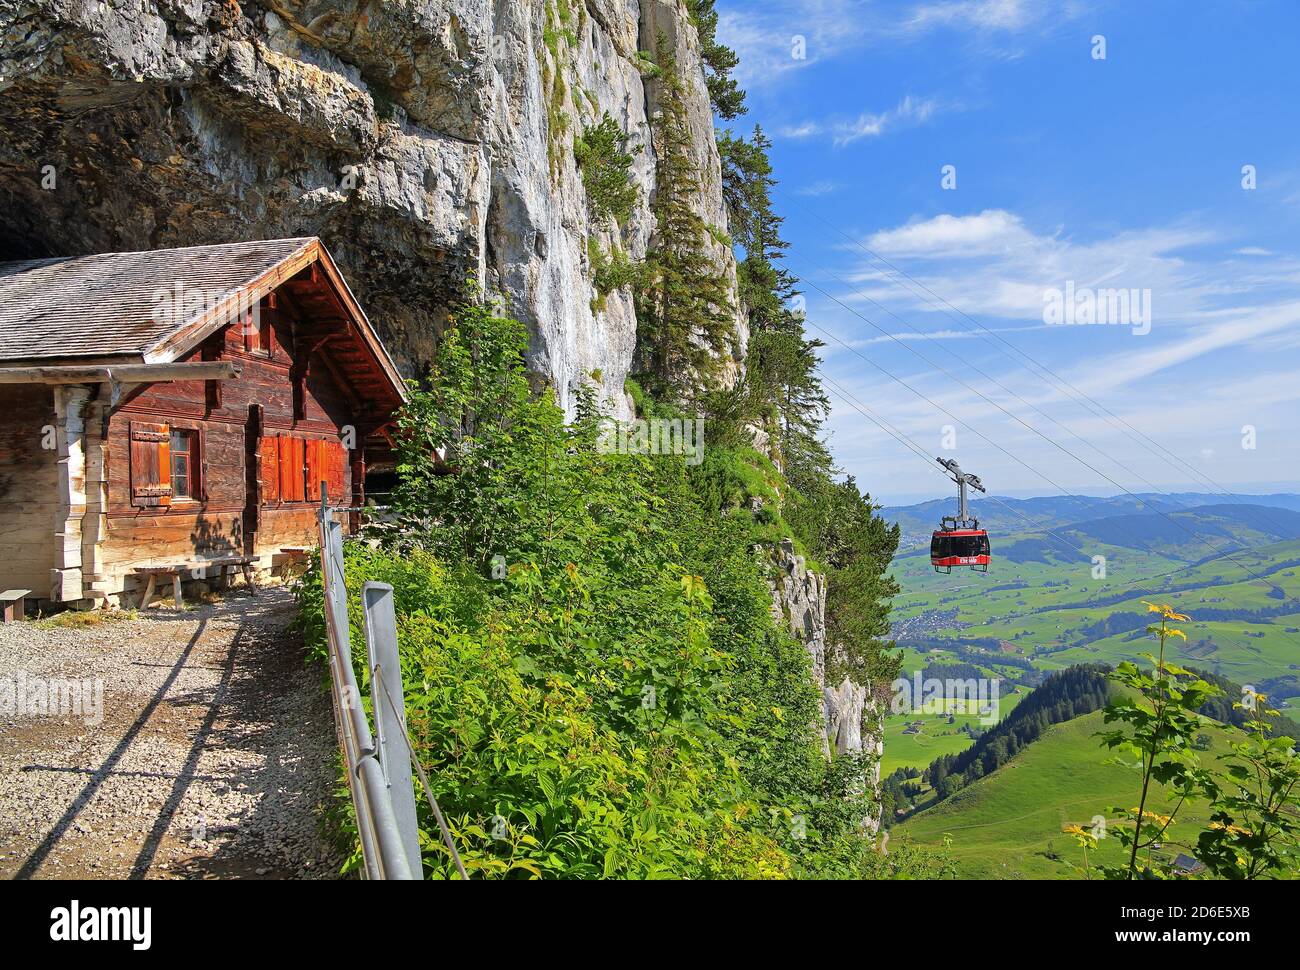 Einsiedlerhütte from Wildkirchli in the Alpsteingebirge with Ebenalp cable car, Wasserauen, Appenzell Alps, Appenzeller Land, Canton of Appenzell-Innerrhoden, Switzerland Stock Photo